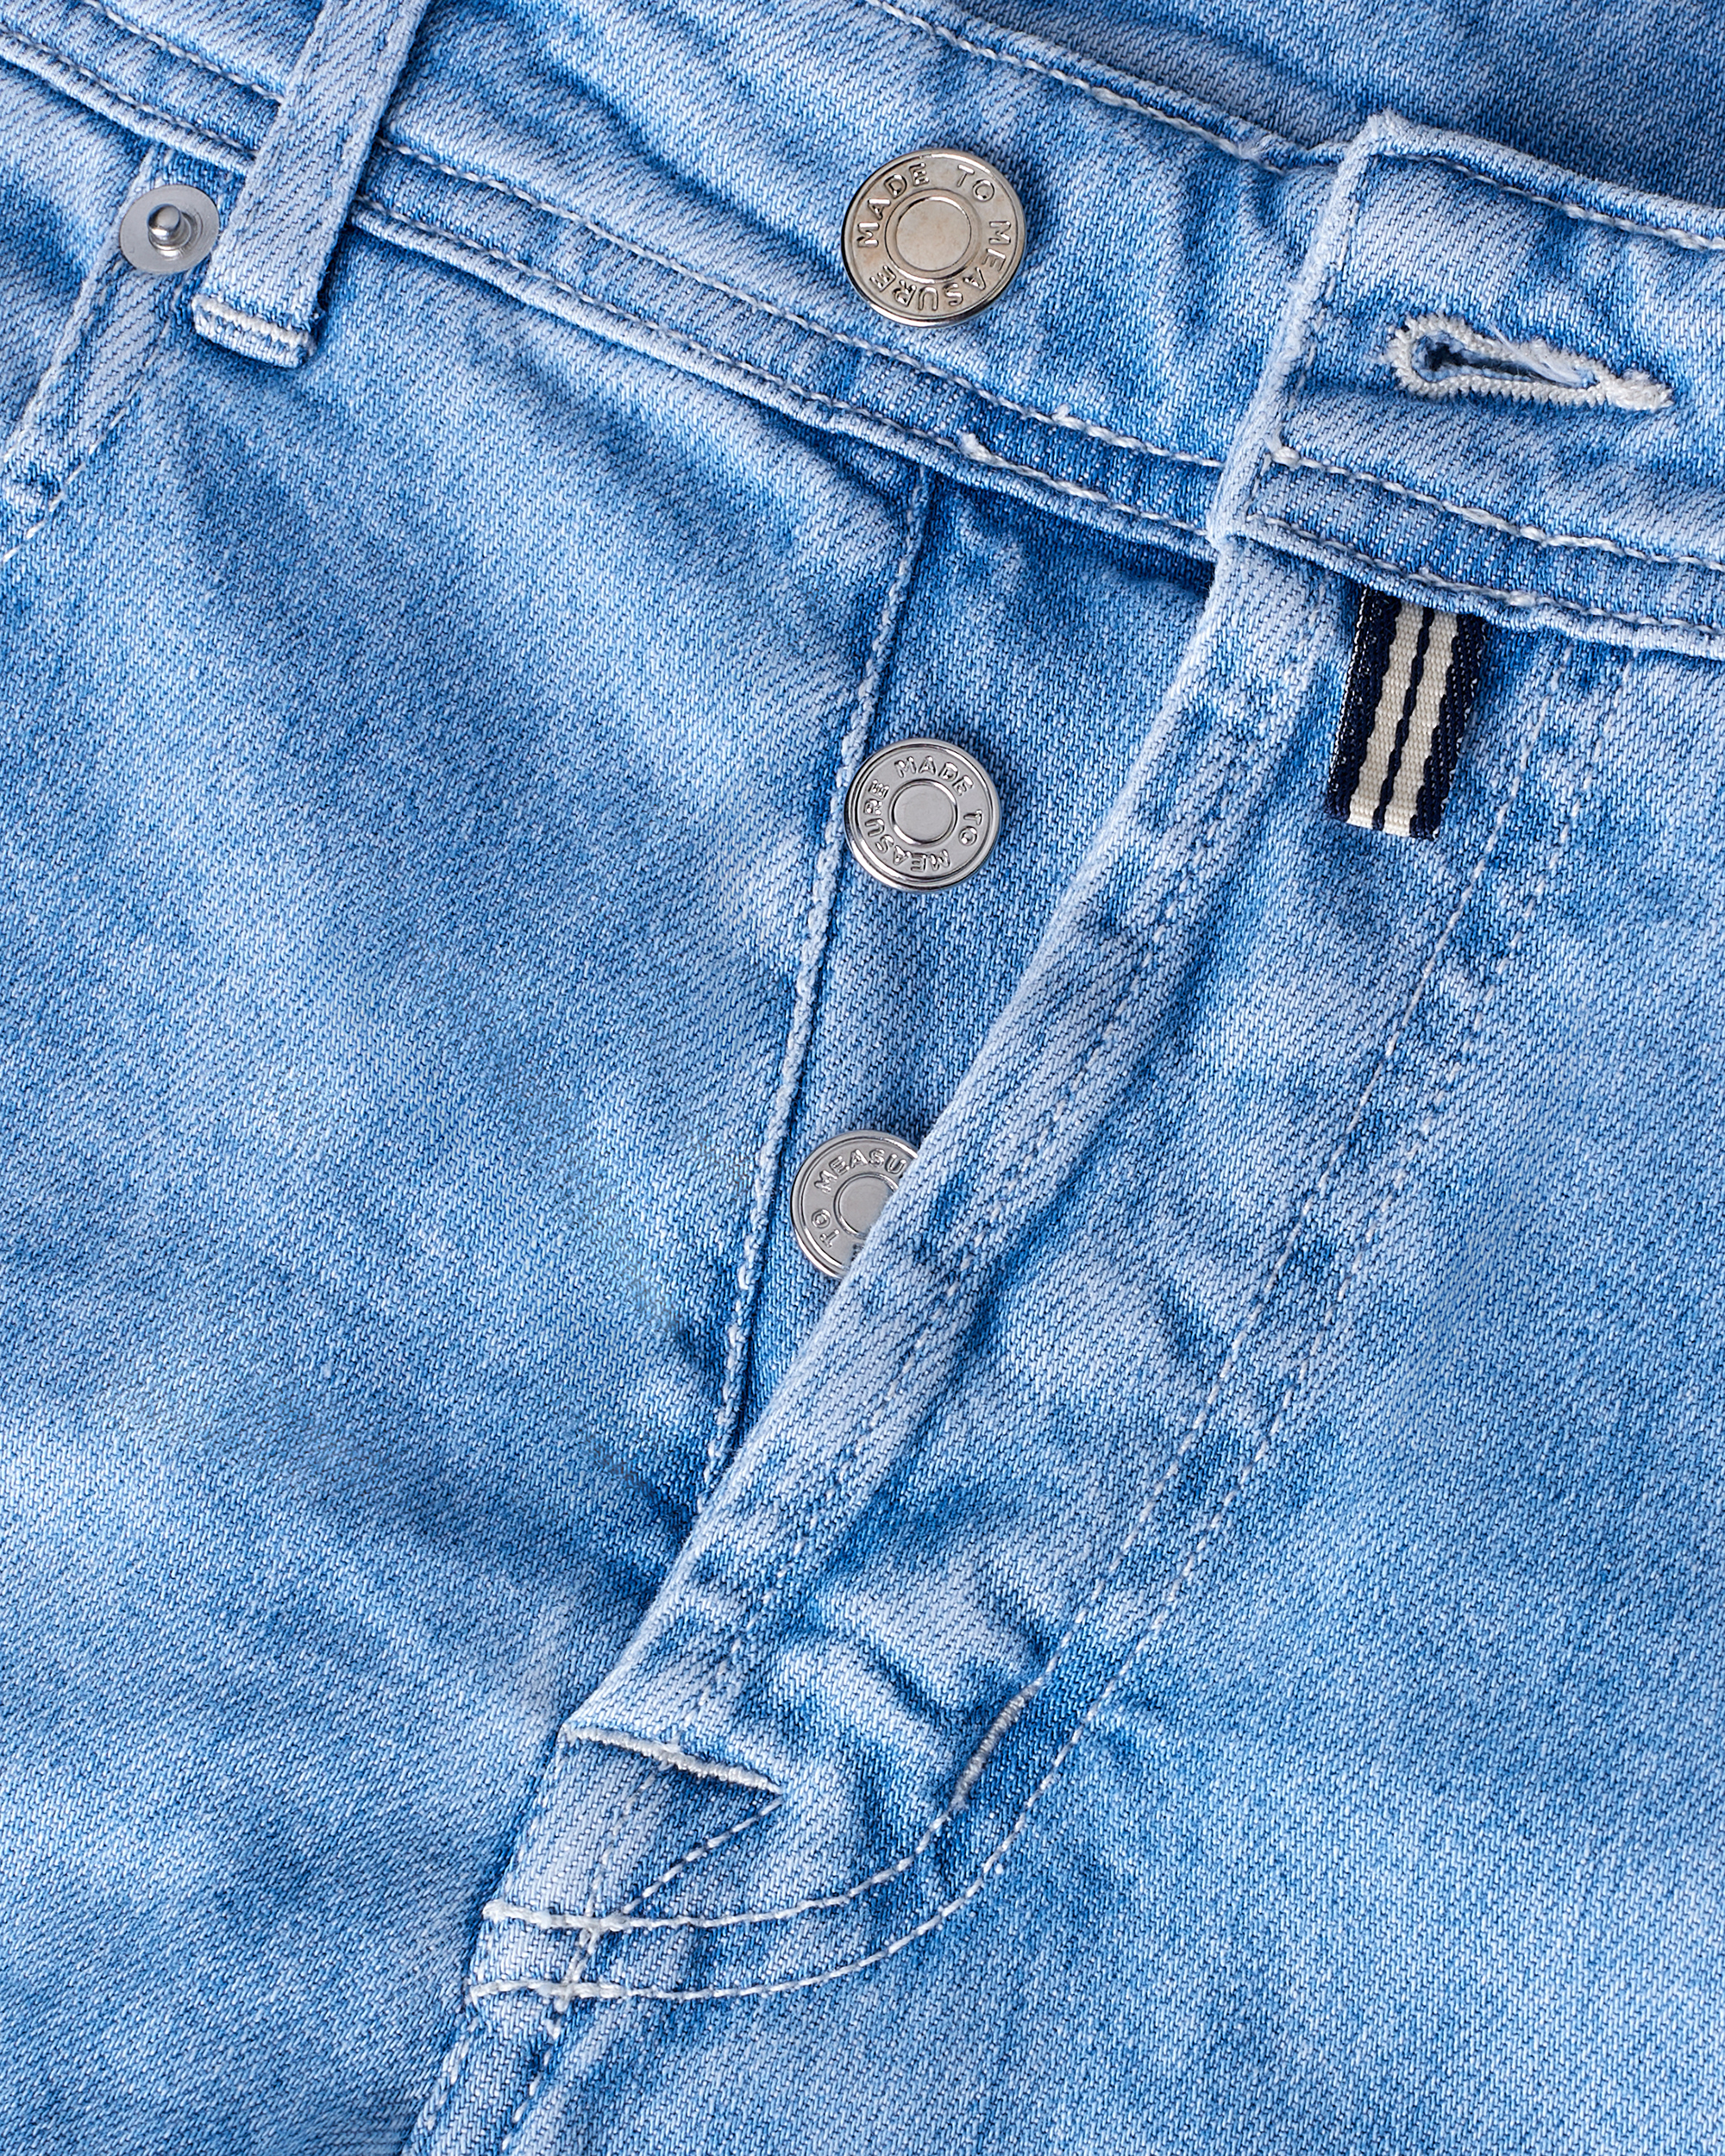 Jeans bleu din denim Candiani cu nasturi metalici argintii din colectia de jeans premium pentru barbati Pileati de la Gentlemen's Boutique